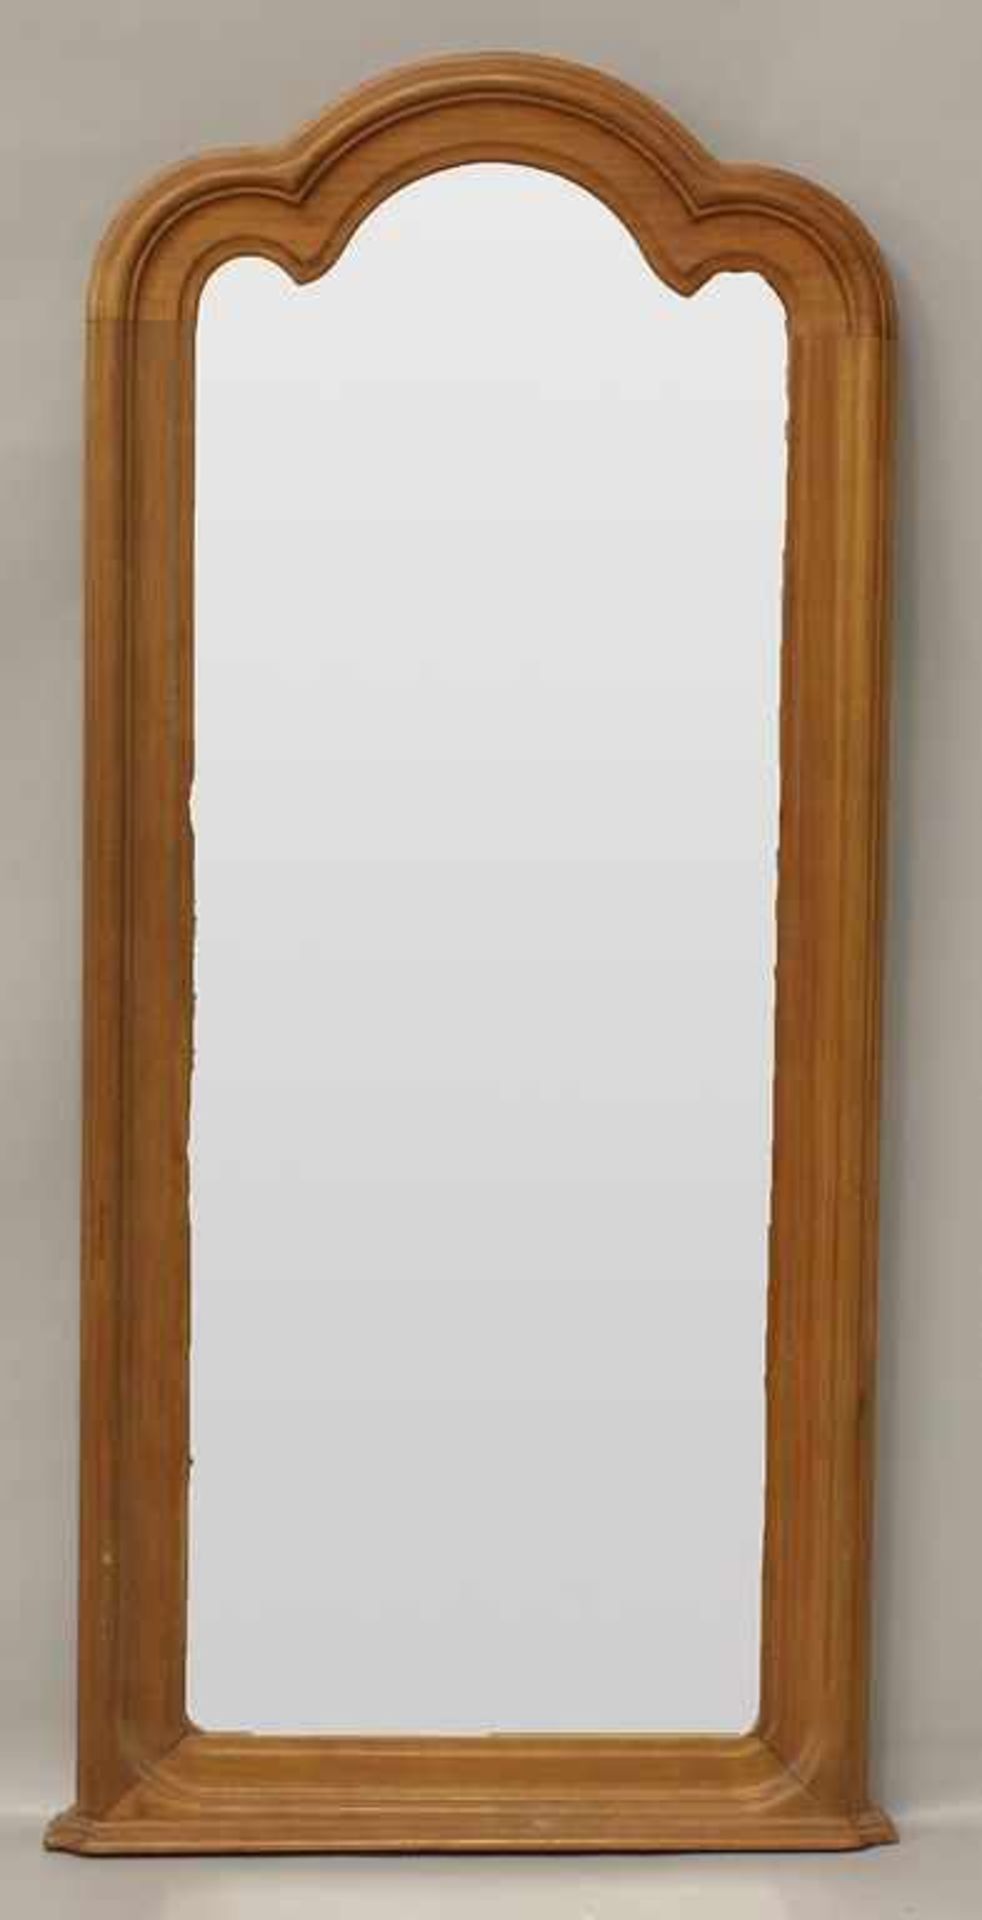 Wandspiegel (um 1900).Hölzerner Rahmen, Spiegelglas. Altersspuren. Ca. 105x 46,5 cm.